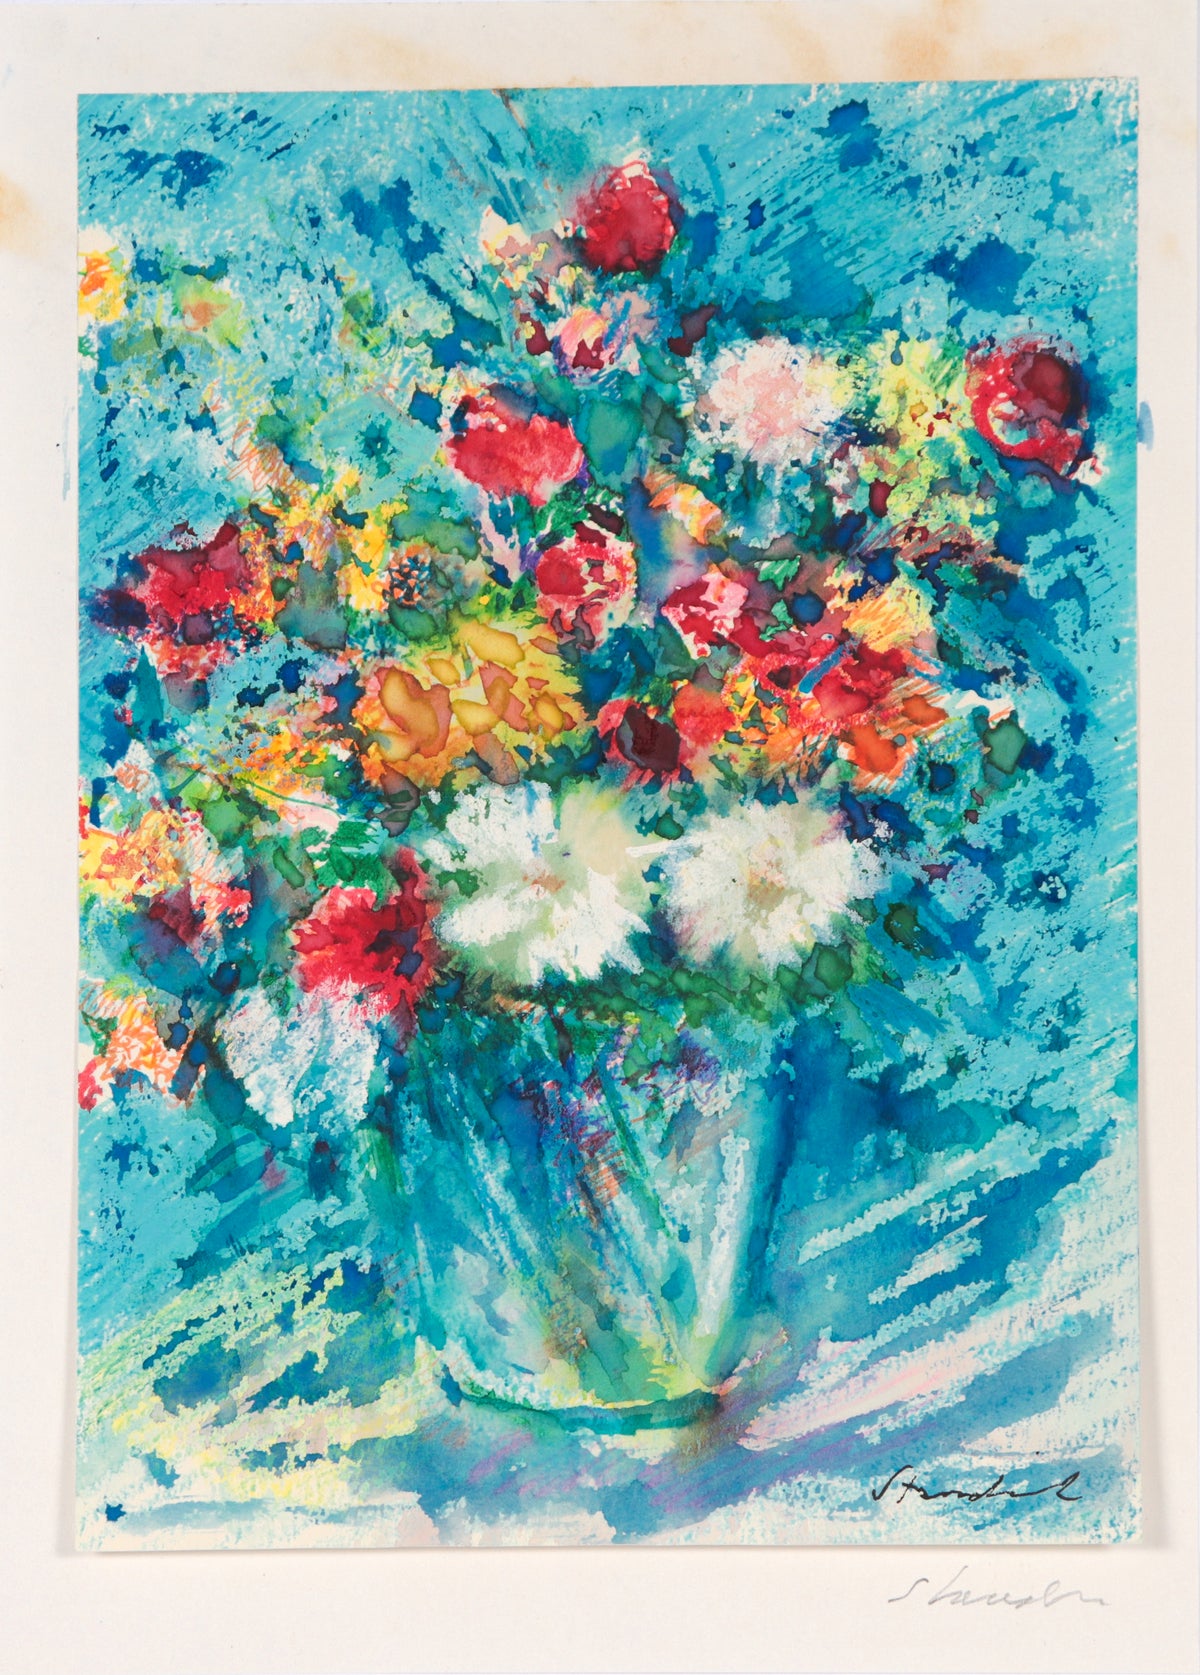 Colorful Floral Stil LIfe &lt;br&gt;20th C. Watercolor &amp; Mixed Media &lt;br&gt;&lt;br&gt;#C4536